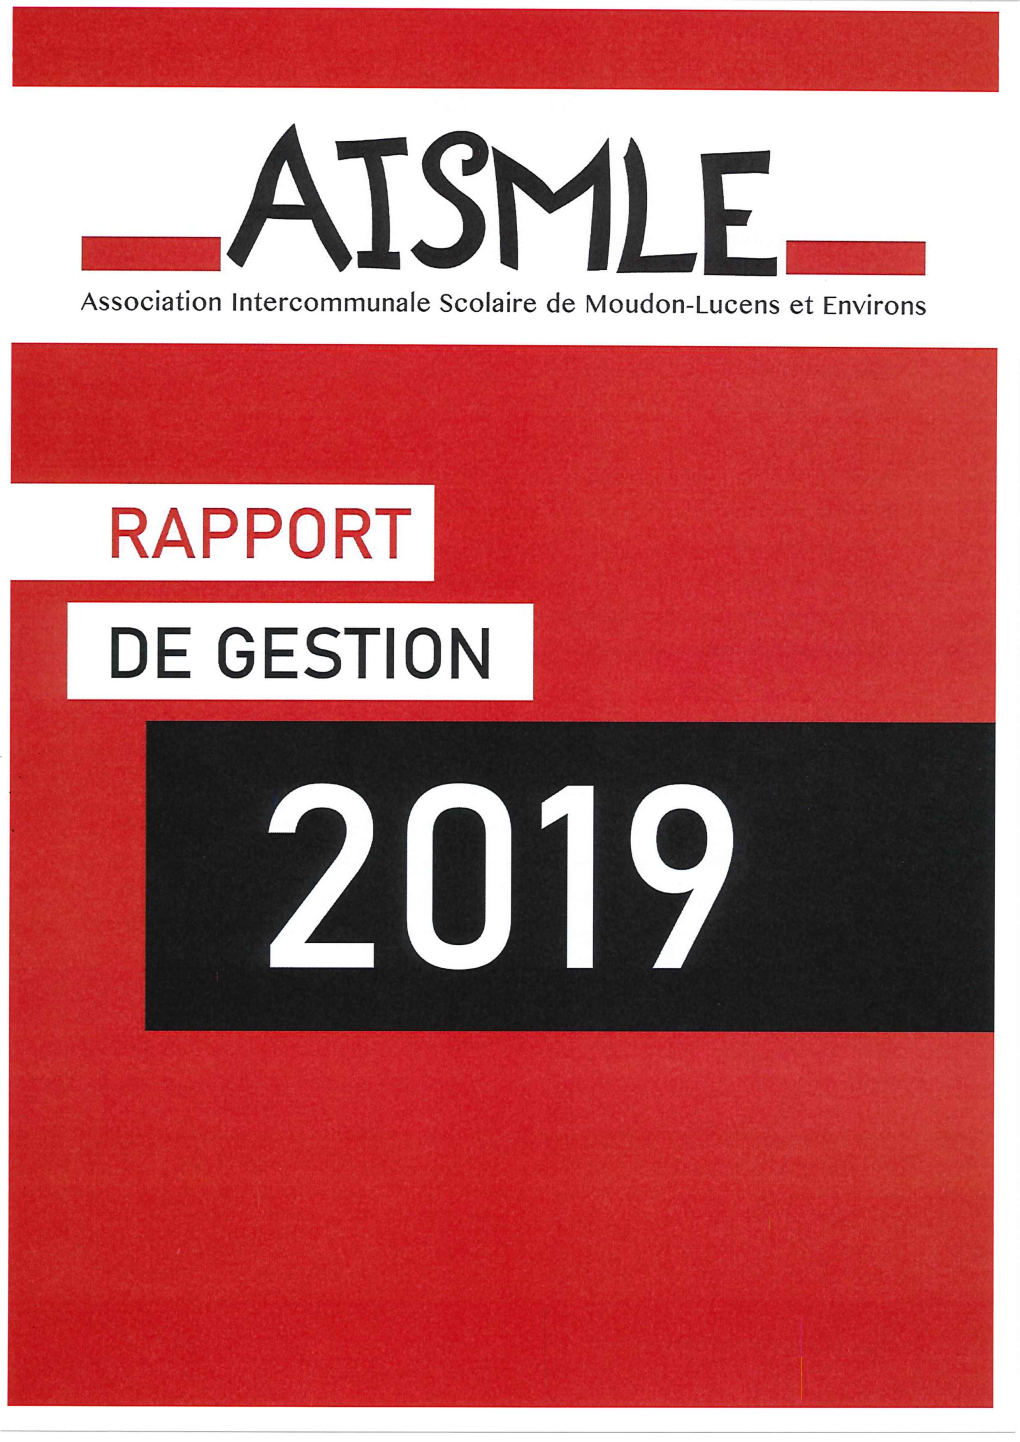 RAPPORT DE GESTION 2019 -ATSMLE- Association Intercommunale Scolaire De Moudon-Lucens Et Environs